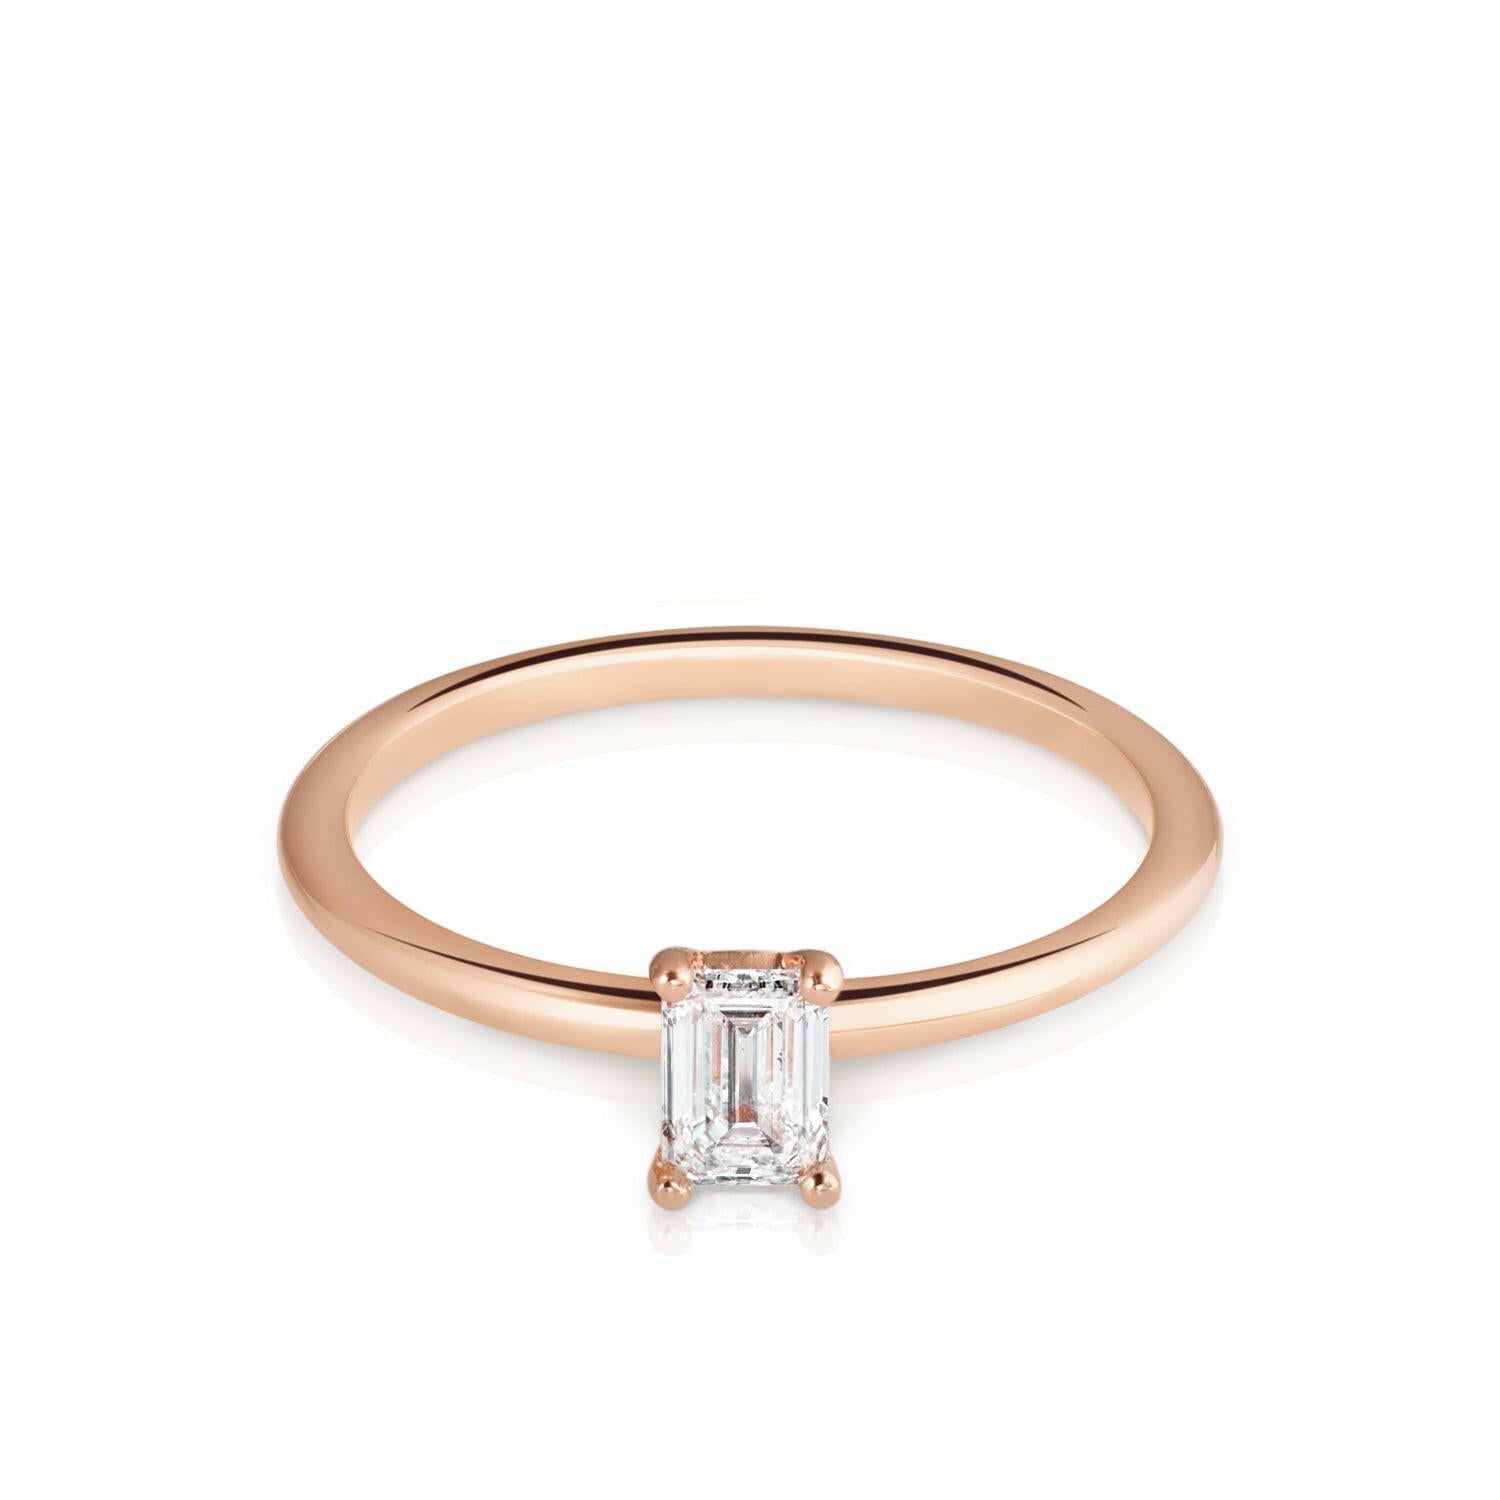 Ring Khloé, Roségold mit Diamant 0.3 ct. von The Good Bling online kaufen (Ref. TGB-Khloe-RG-03)